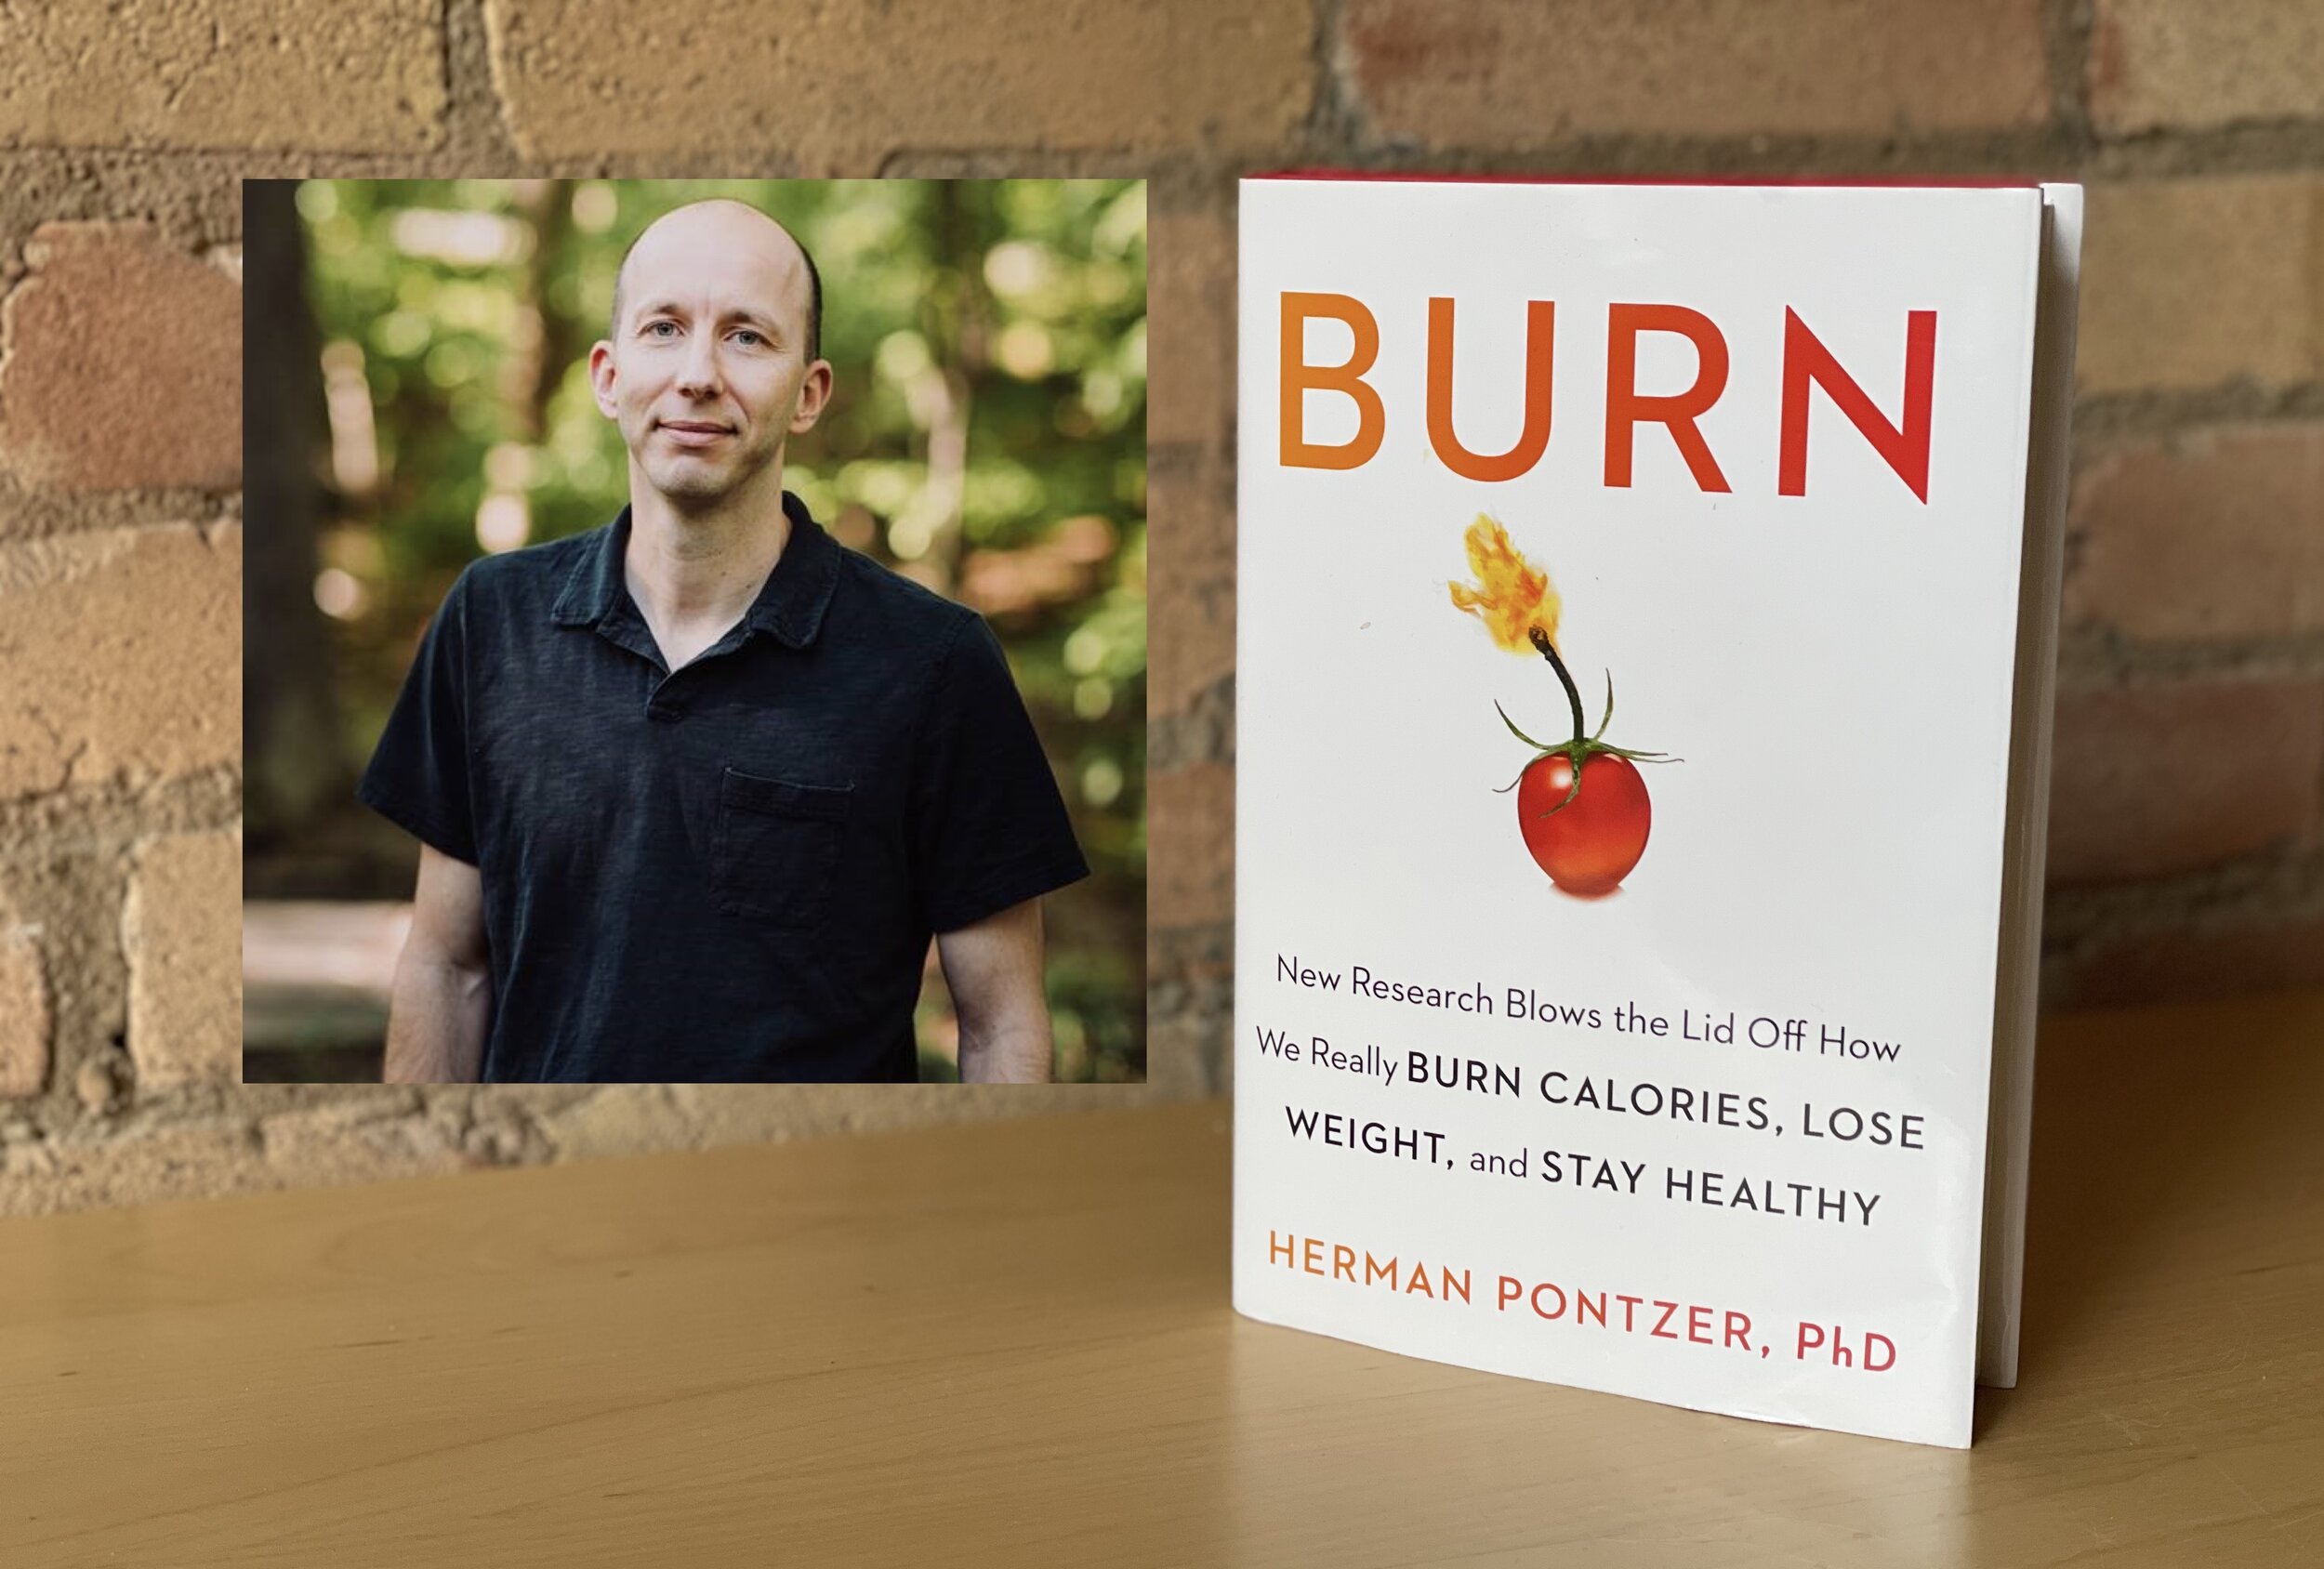 Біг не означає схуднення: цікава думка у книзі Burn